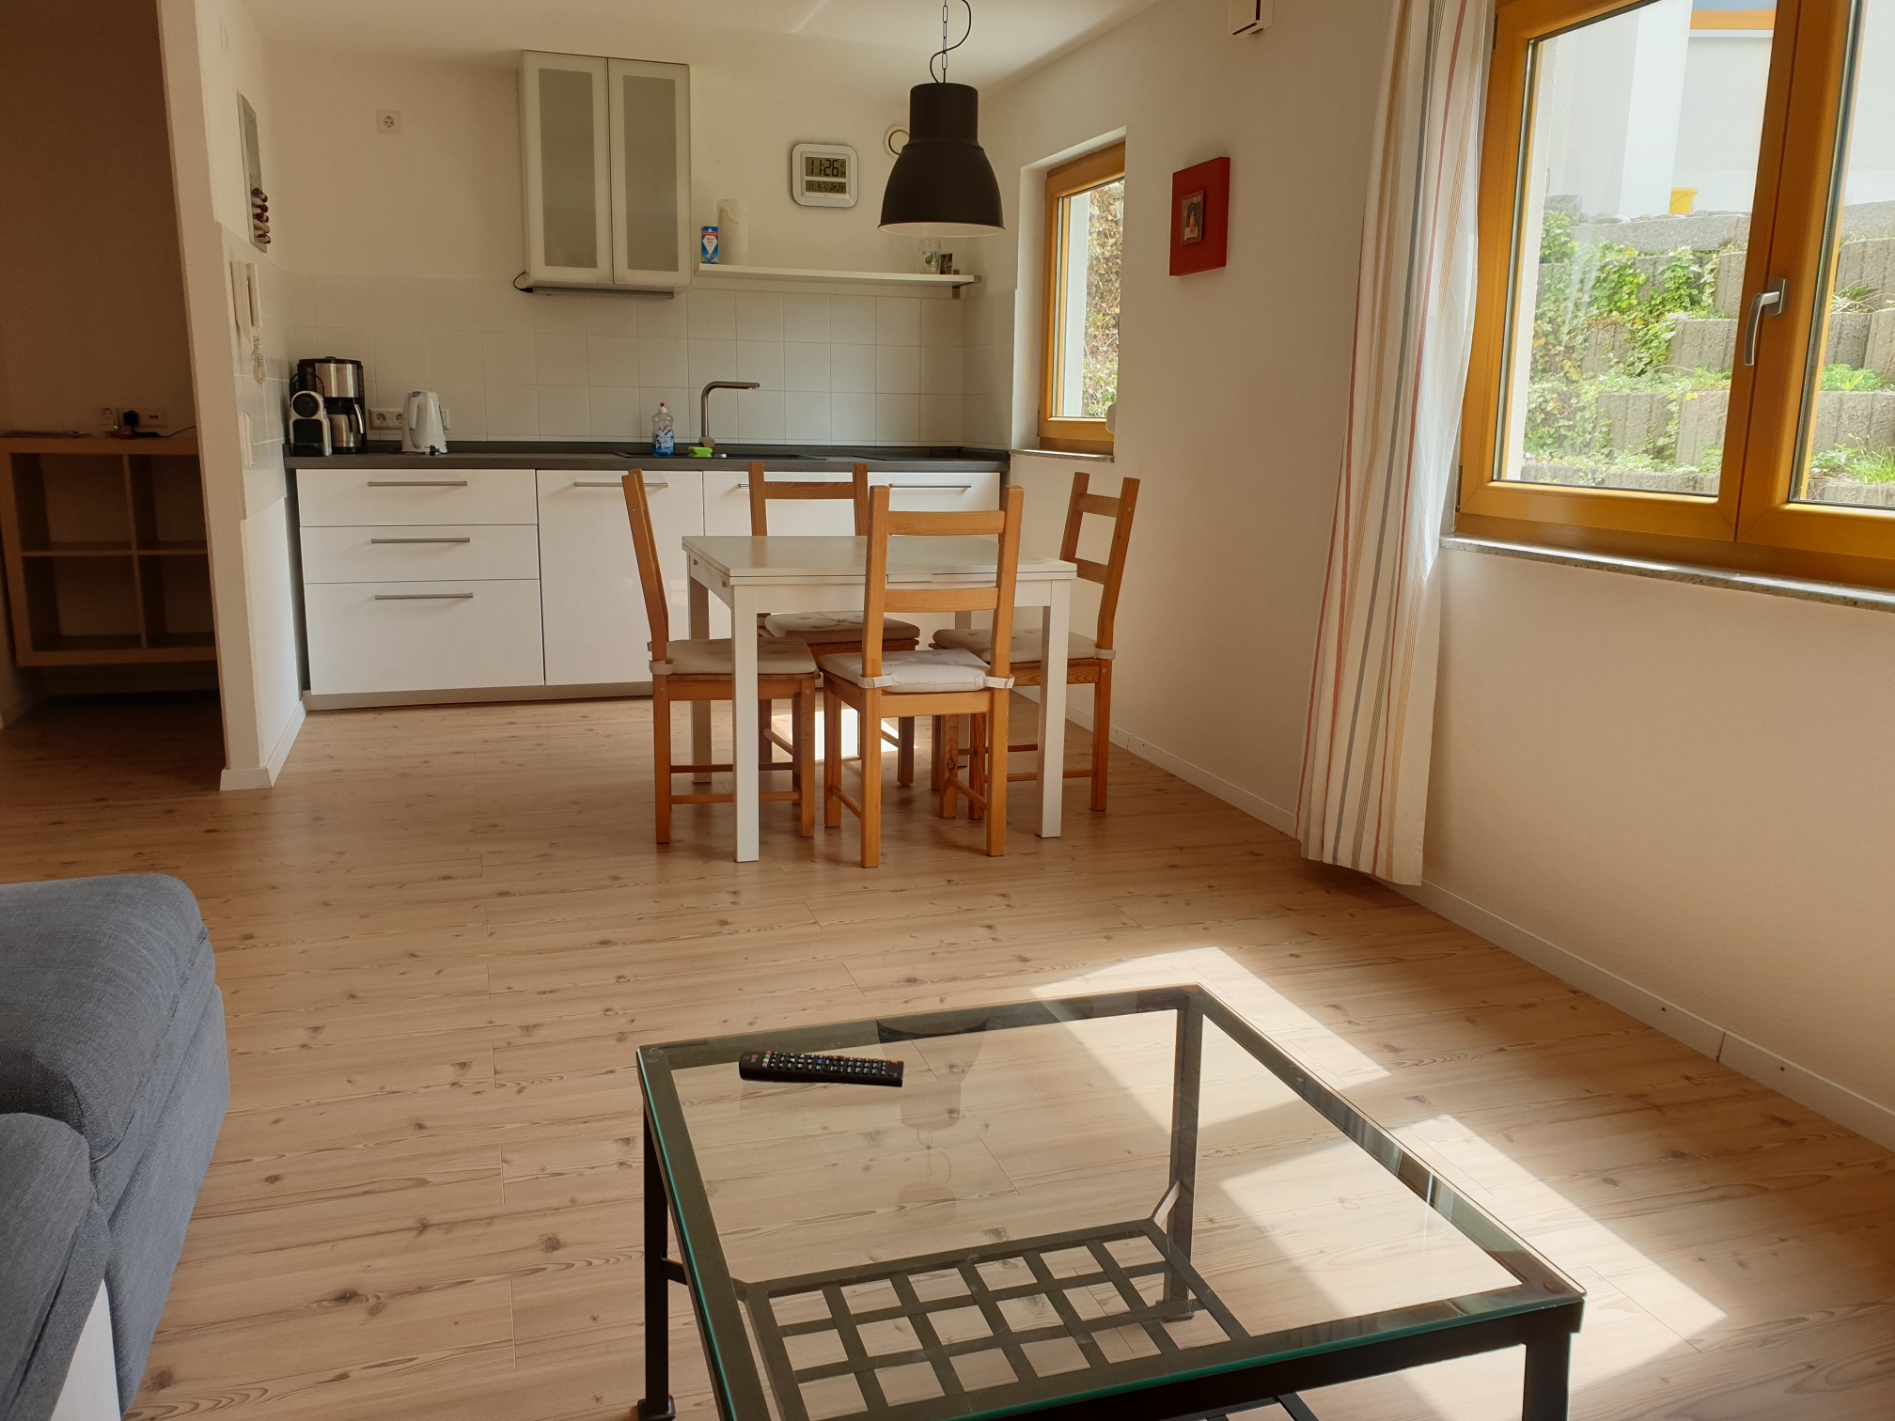 Apartment A - Wohn-Ess-Küchenbereich / Kitchen-Dining-Living